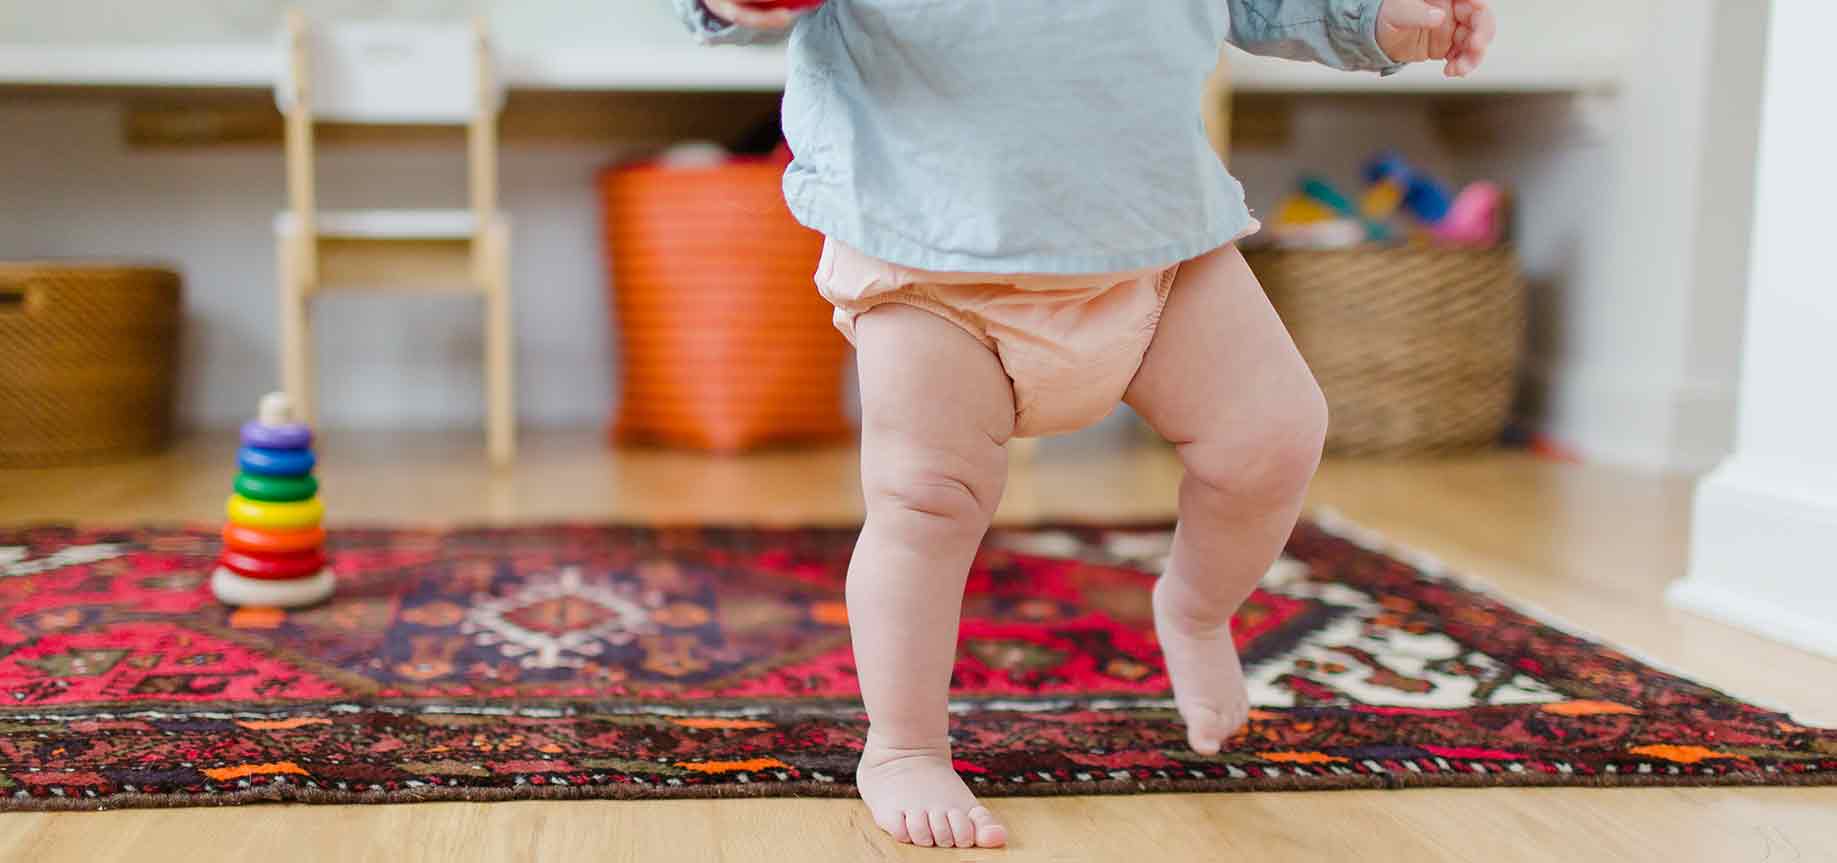 Wann wird Ihr Baby voraussichtlich seine ersten Schritte machen?